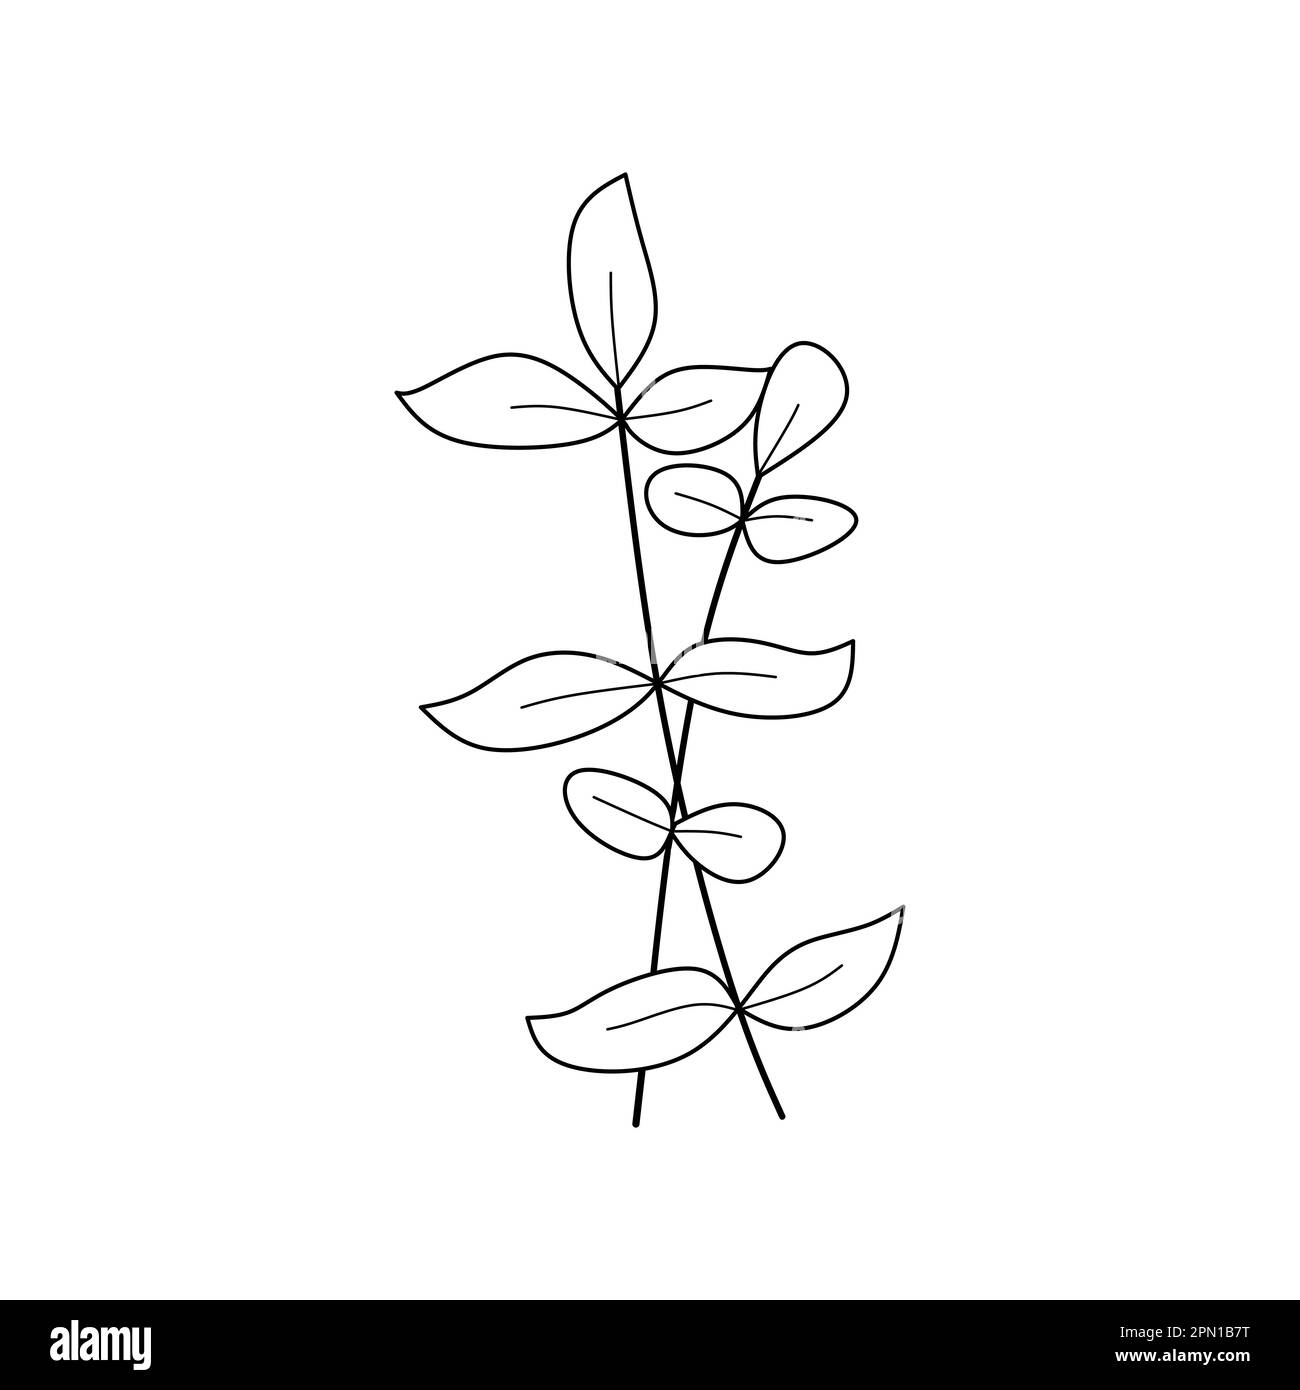 Niedliche Blume Botanisches Blumenvektordesign mit handgezeichneten Motiven Stock Vektor